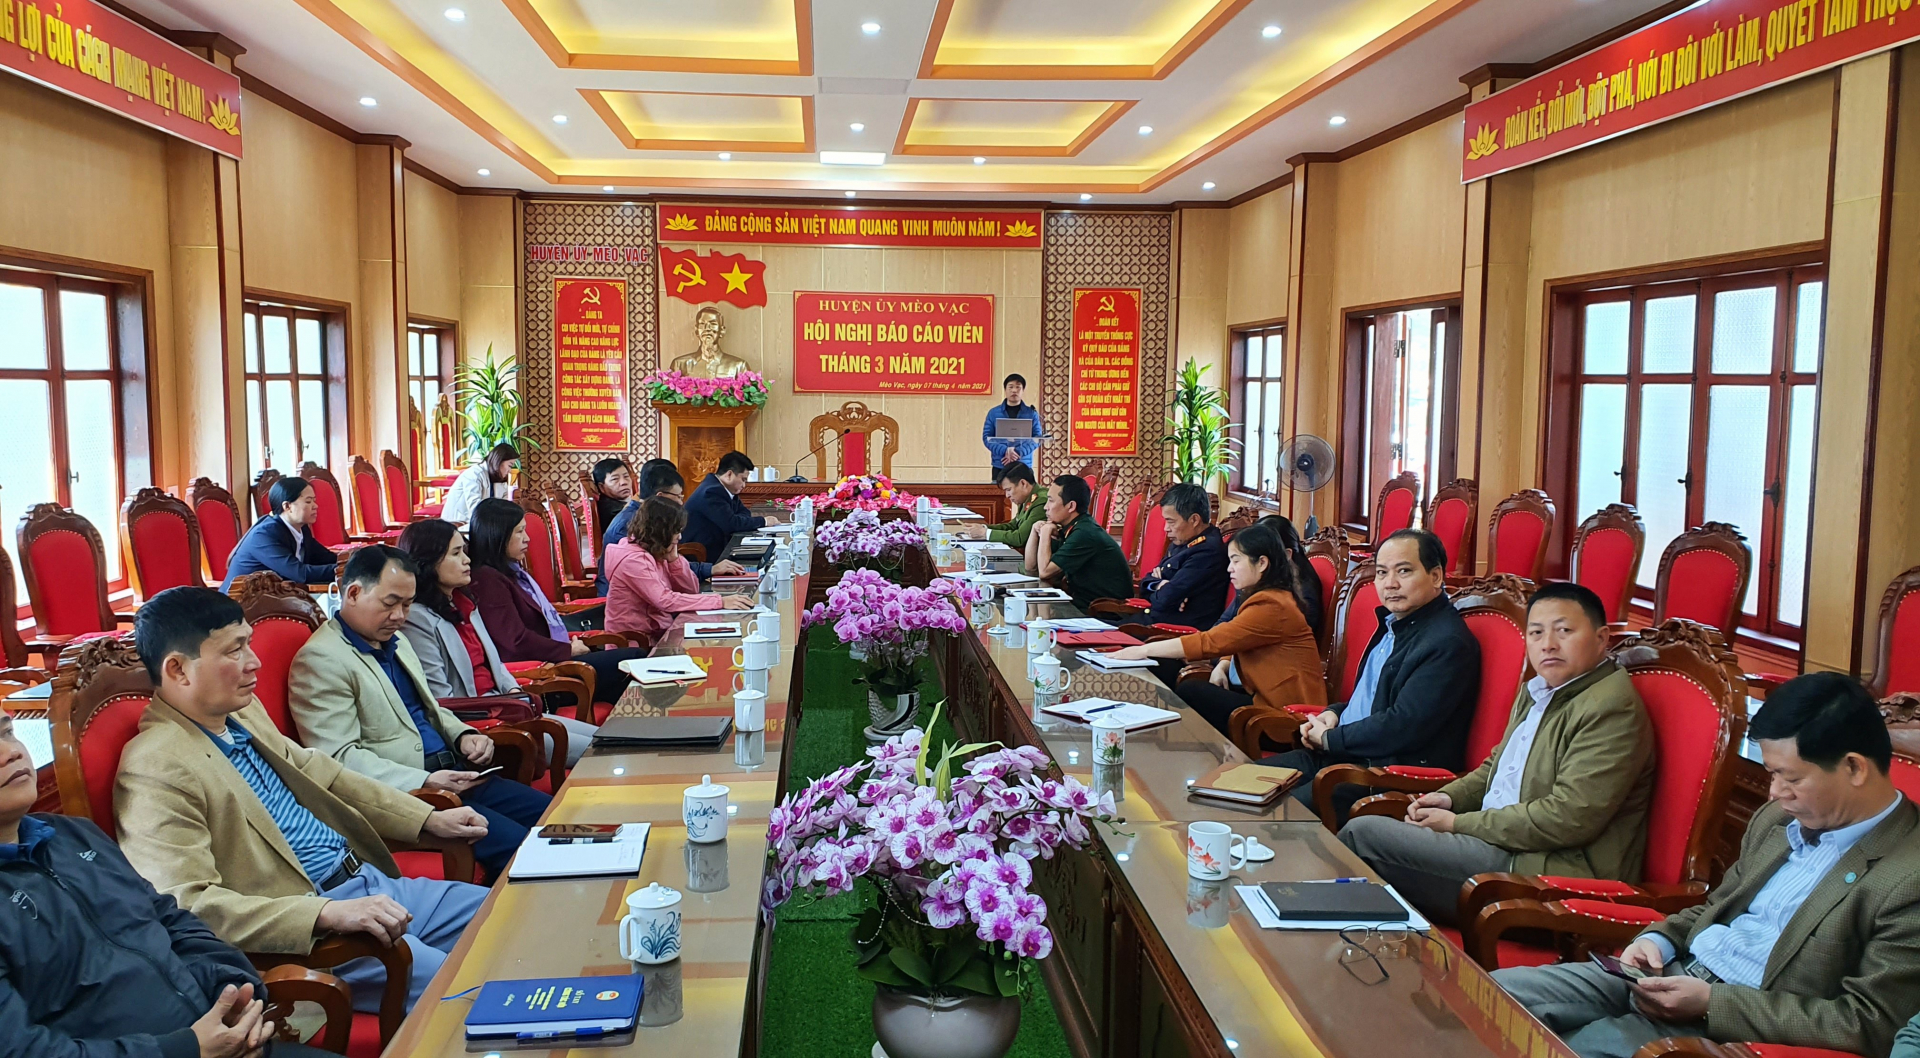 Hội nghị báo cáo viên được Ban Tuyên giáo Huyện ủy Mèo Vạc triển khai trực tuyến về cơ sở. (Ảnh chụp trước 25.10)